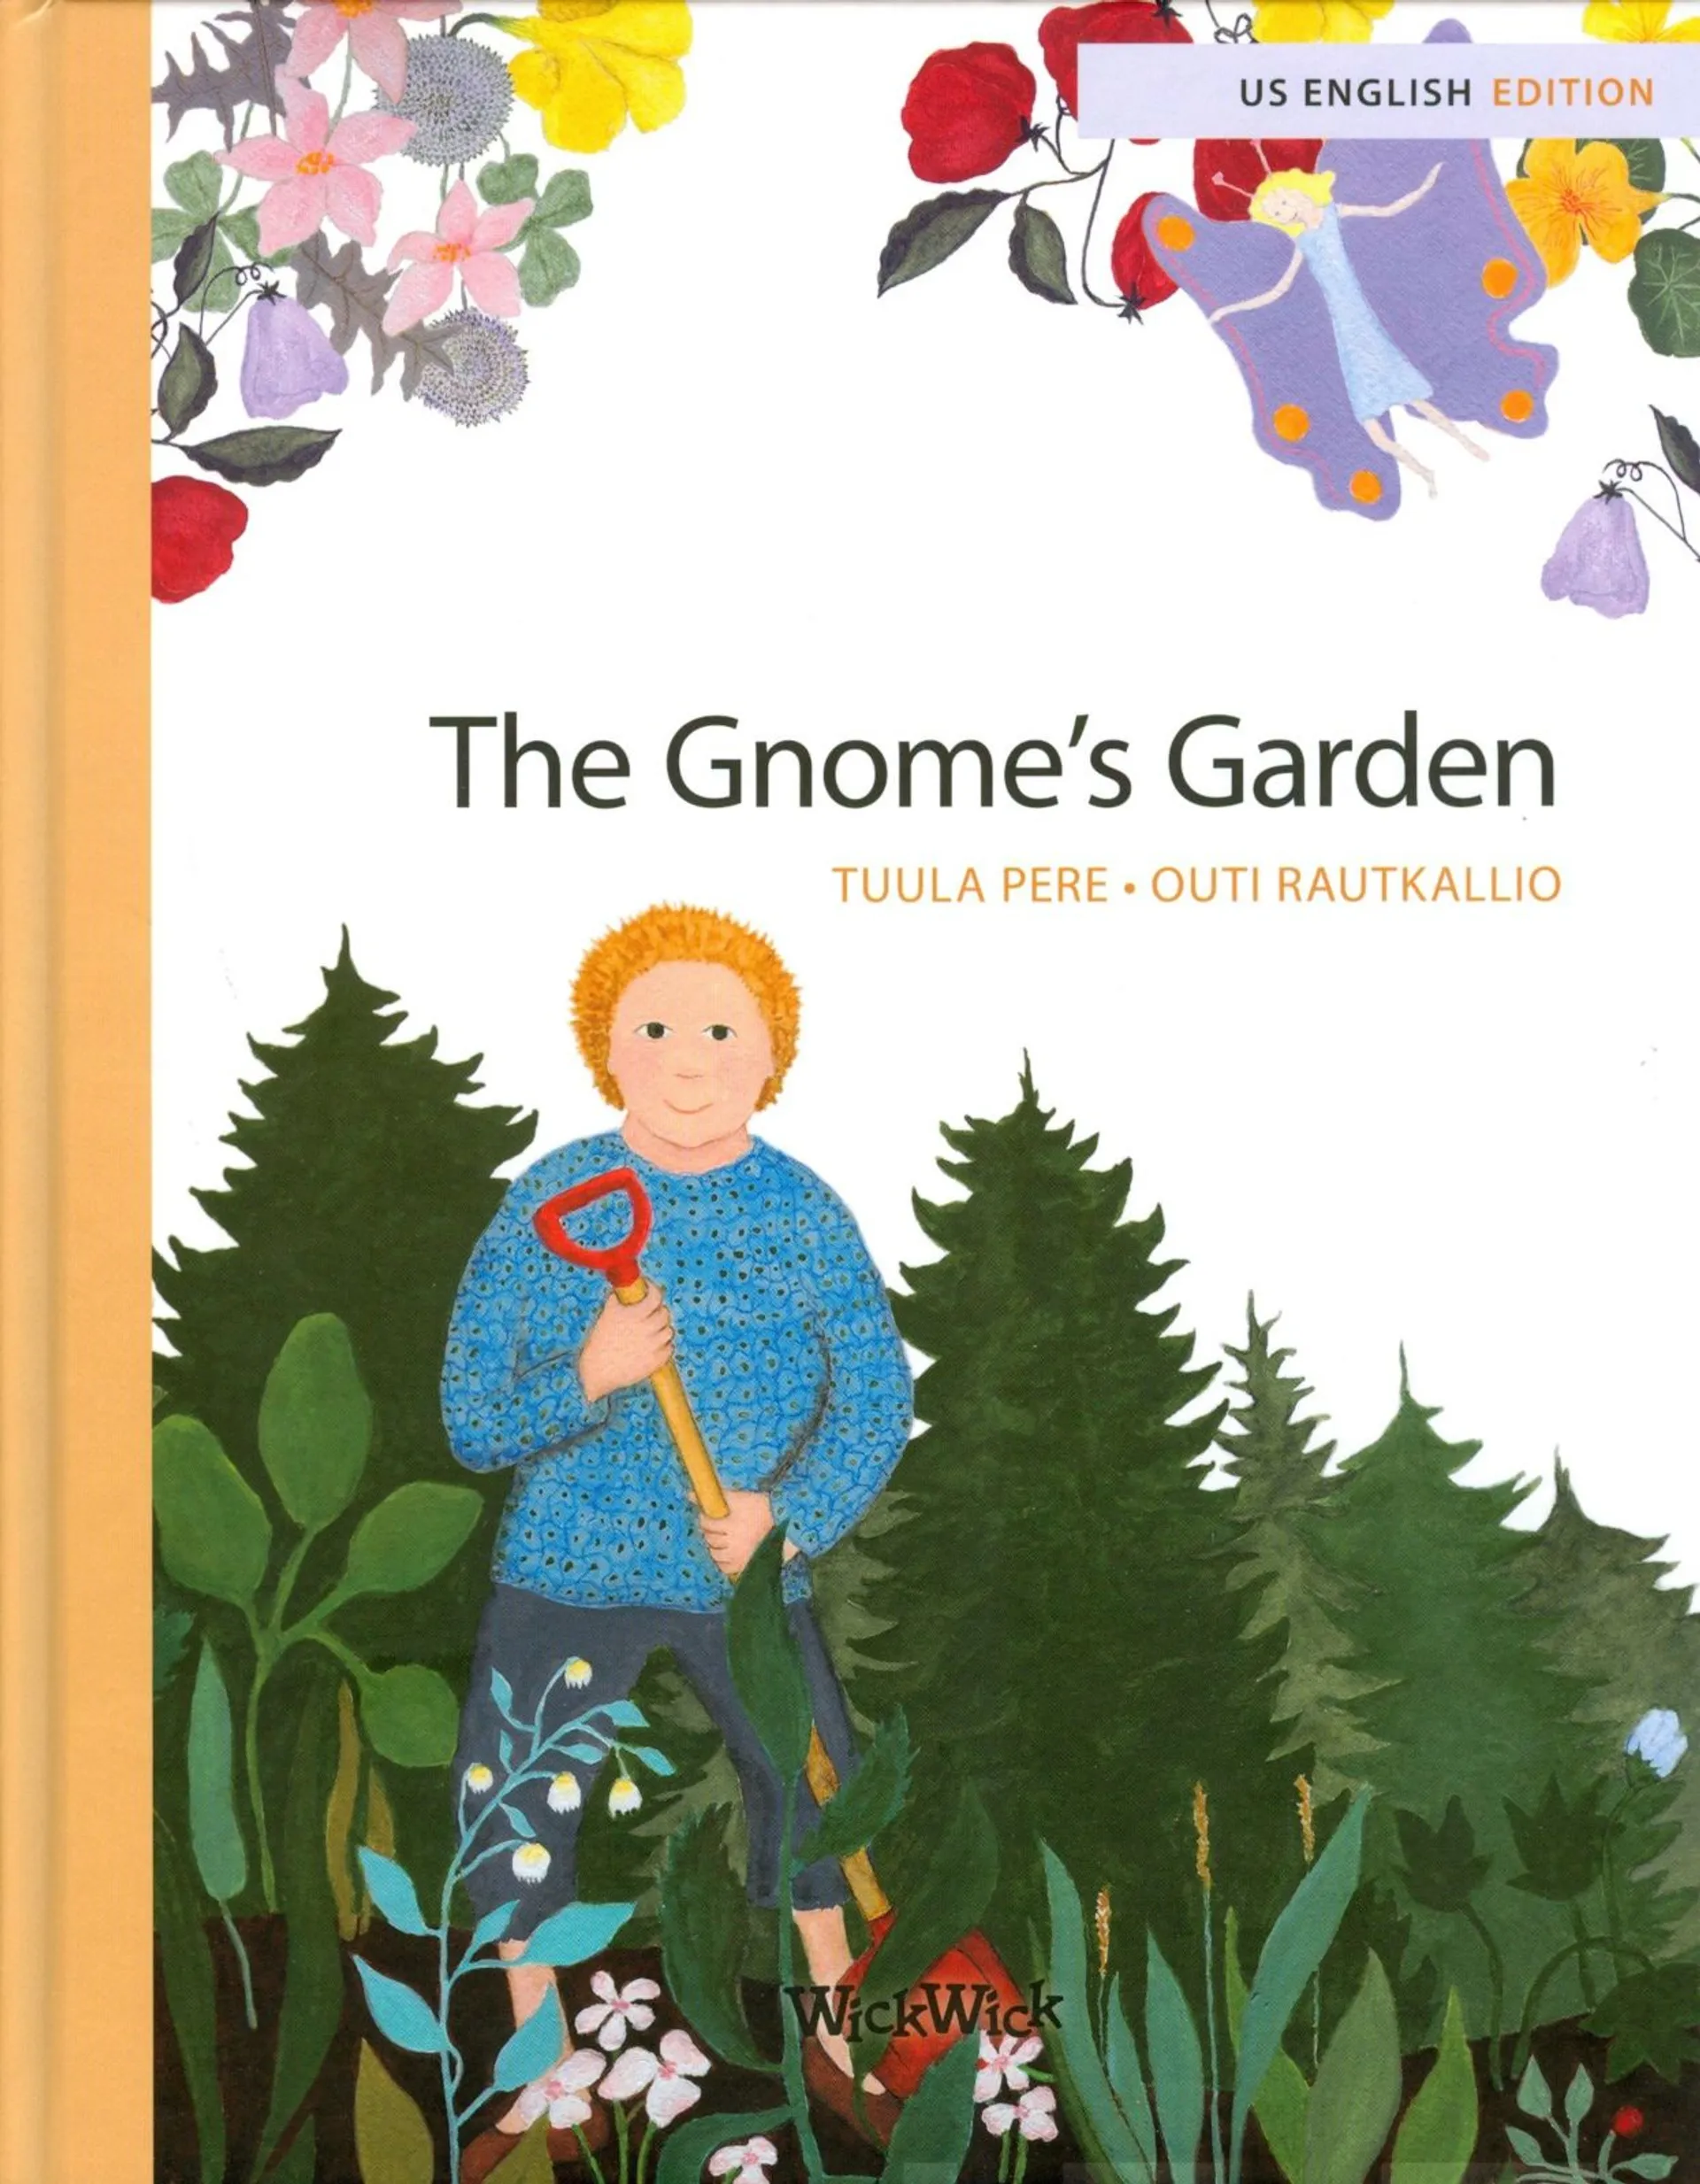 Pere, The Gnome's Garden